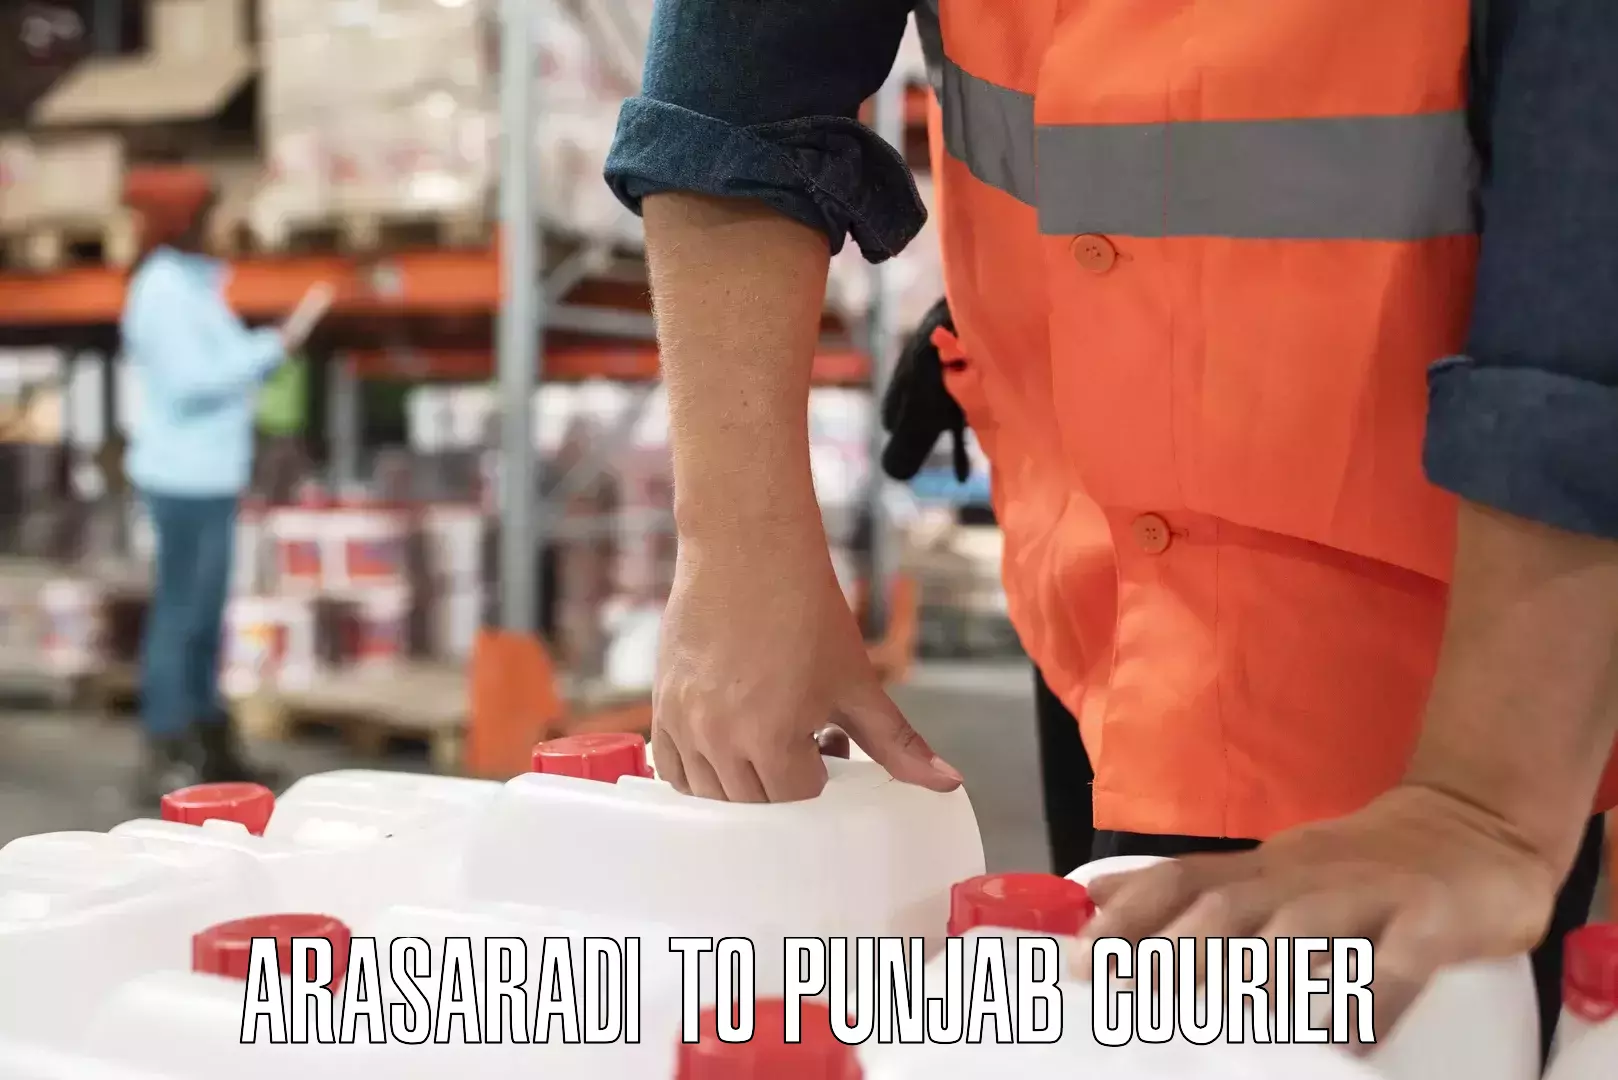 Customer-centric shipping Arasaradi to Punjab